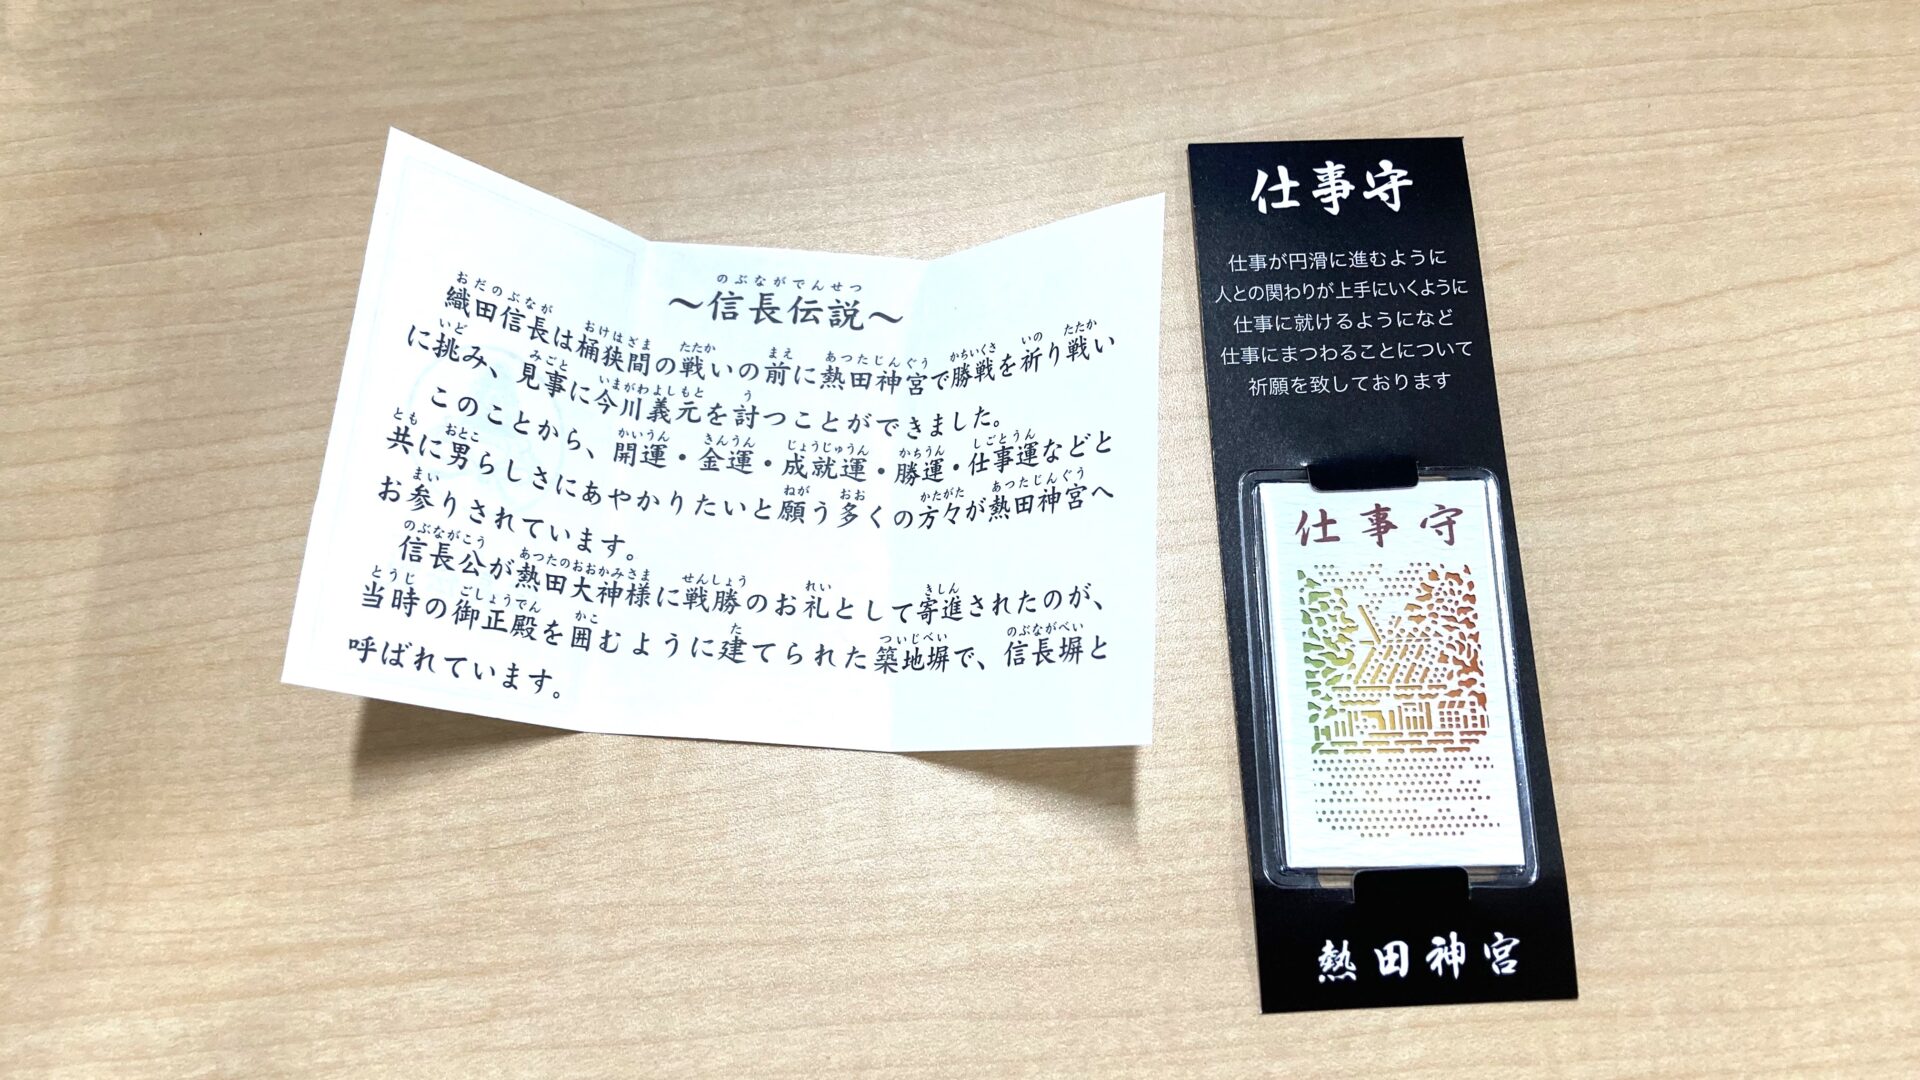 熱田神宮の信長伝説の解説した紙と仕事守りの写真